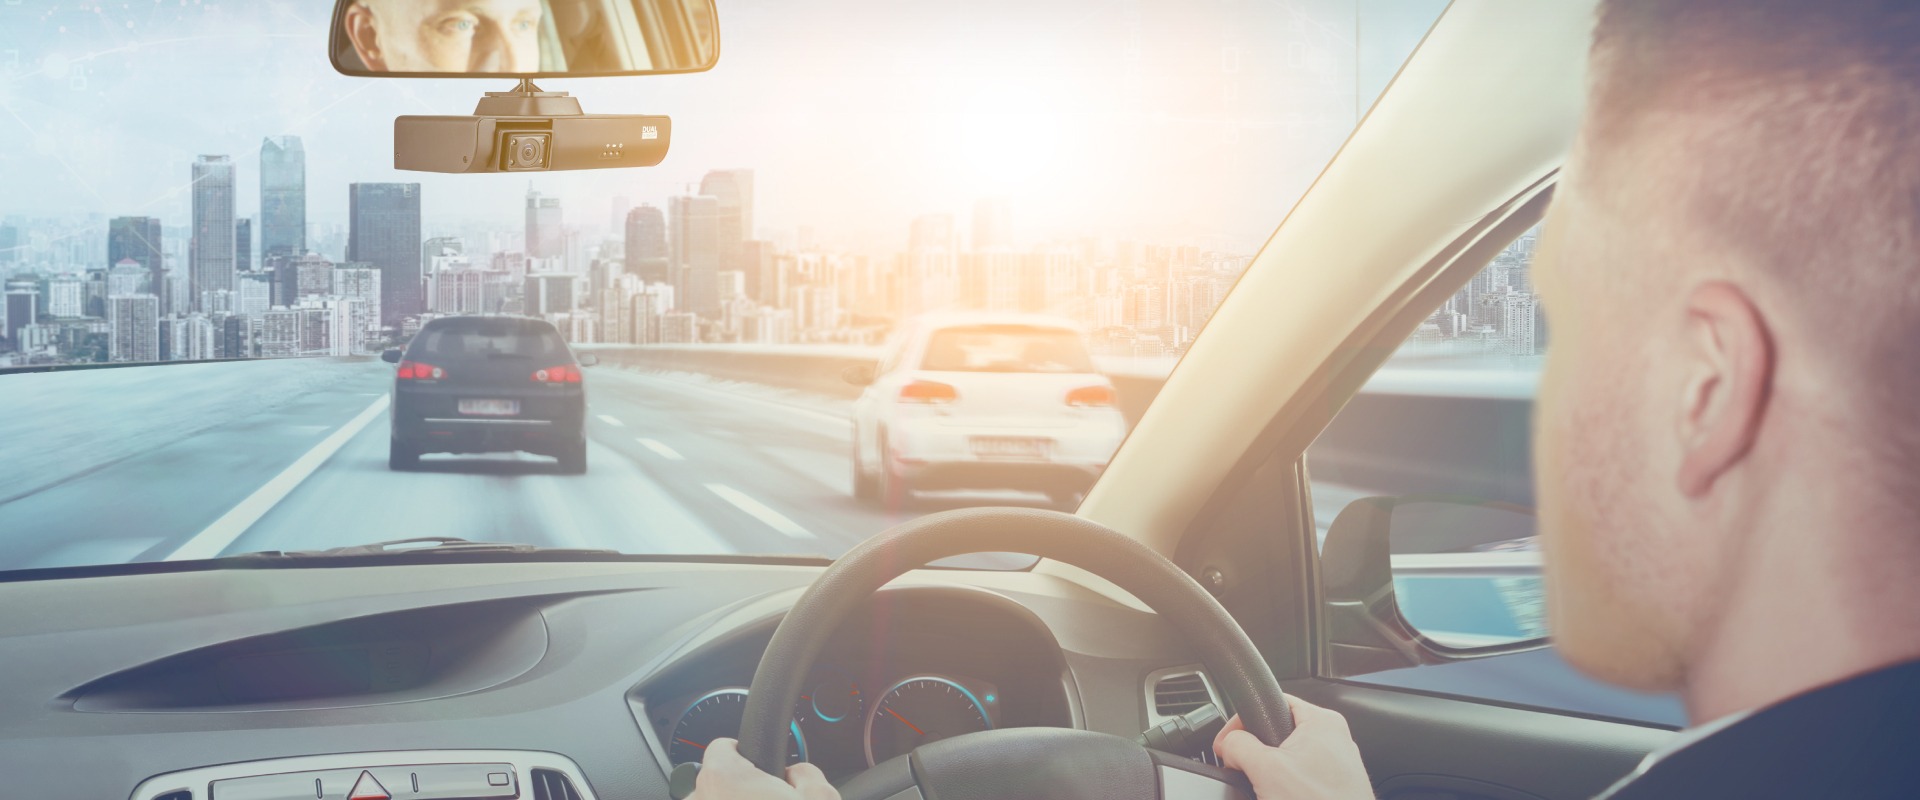 KI Dash Cams reduzieren Ablenkungen des Fahrers und fördern sicheres Fahren